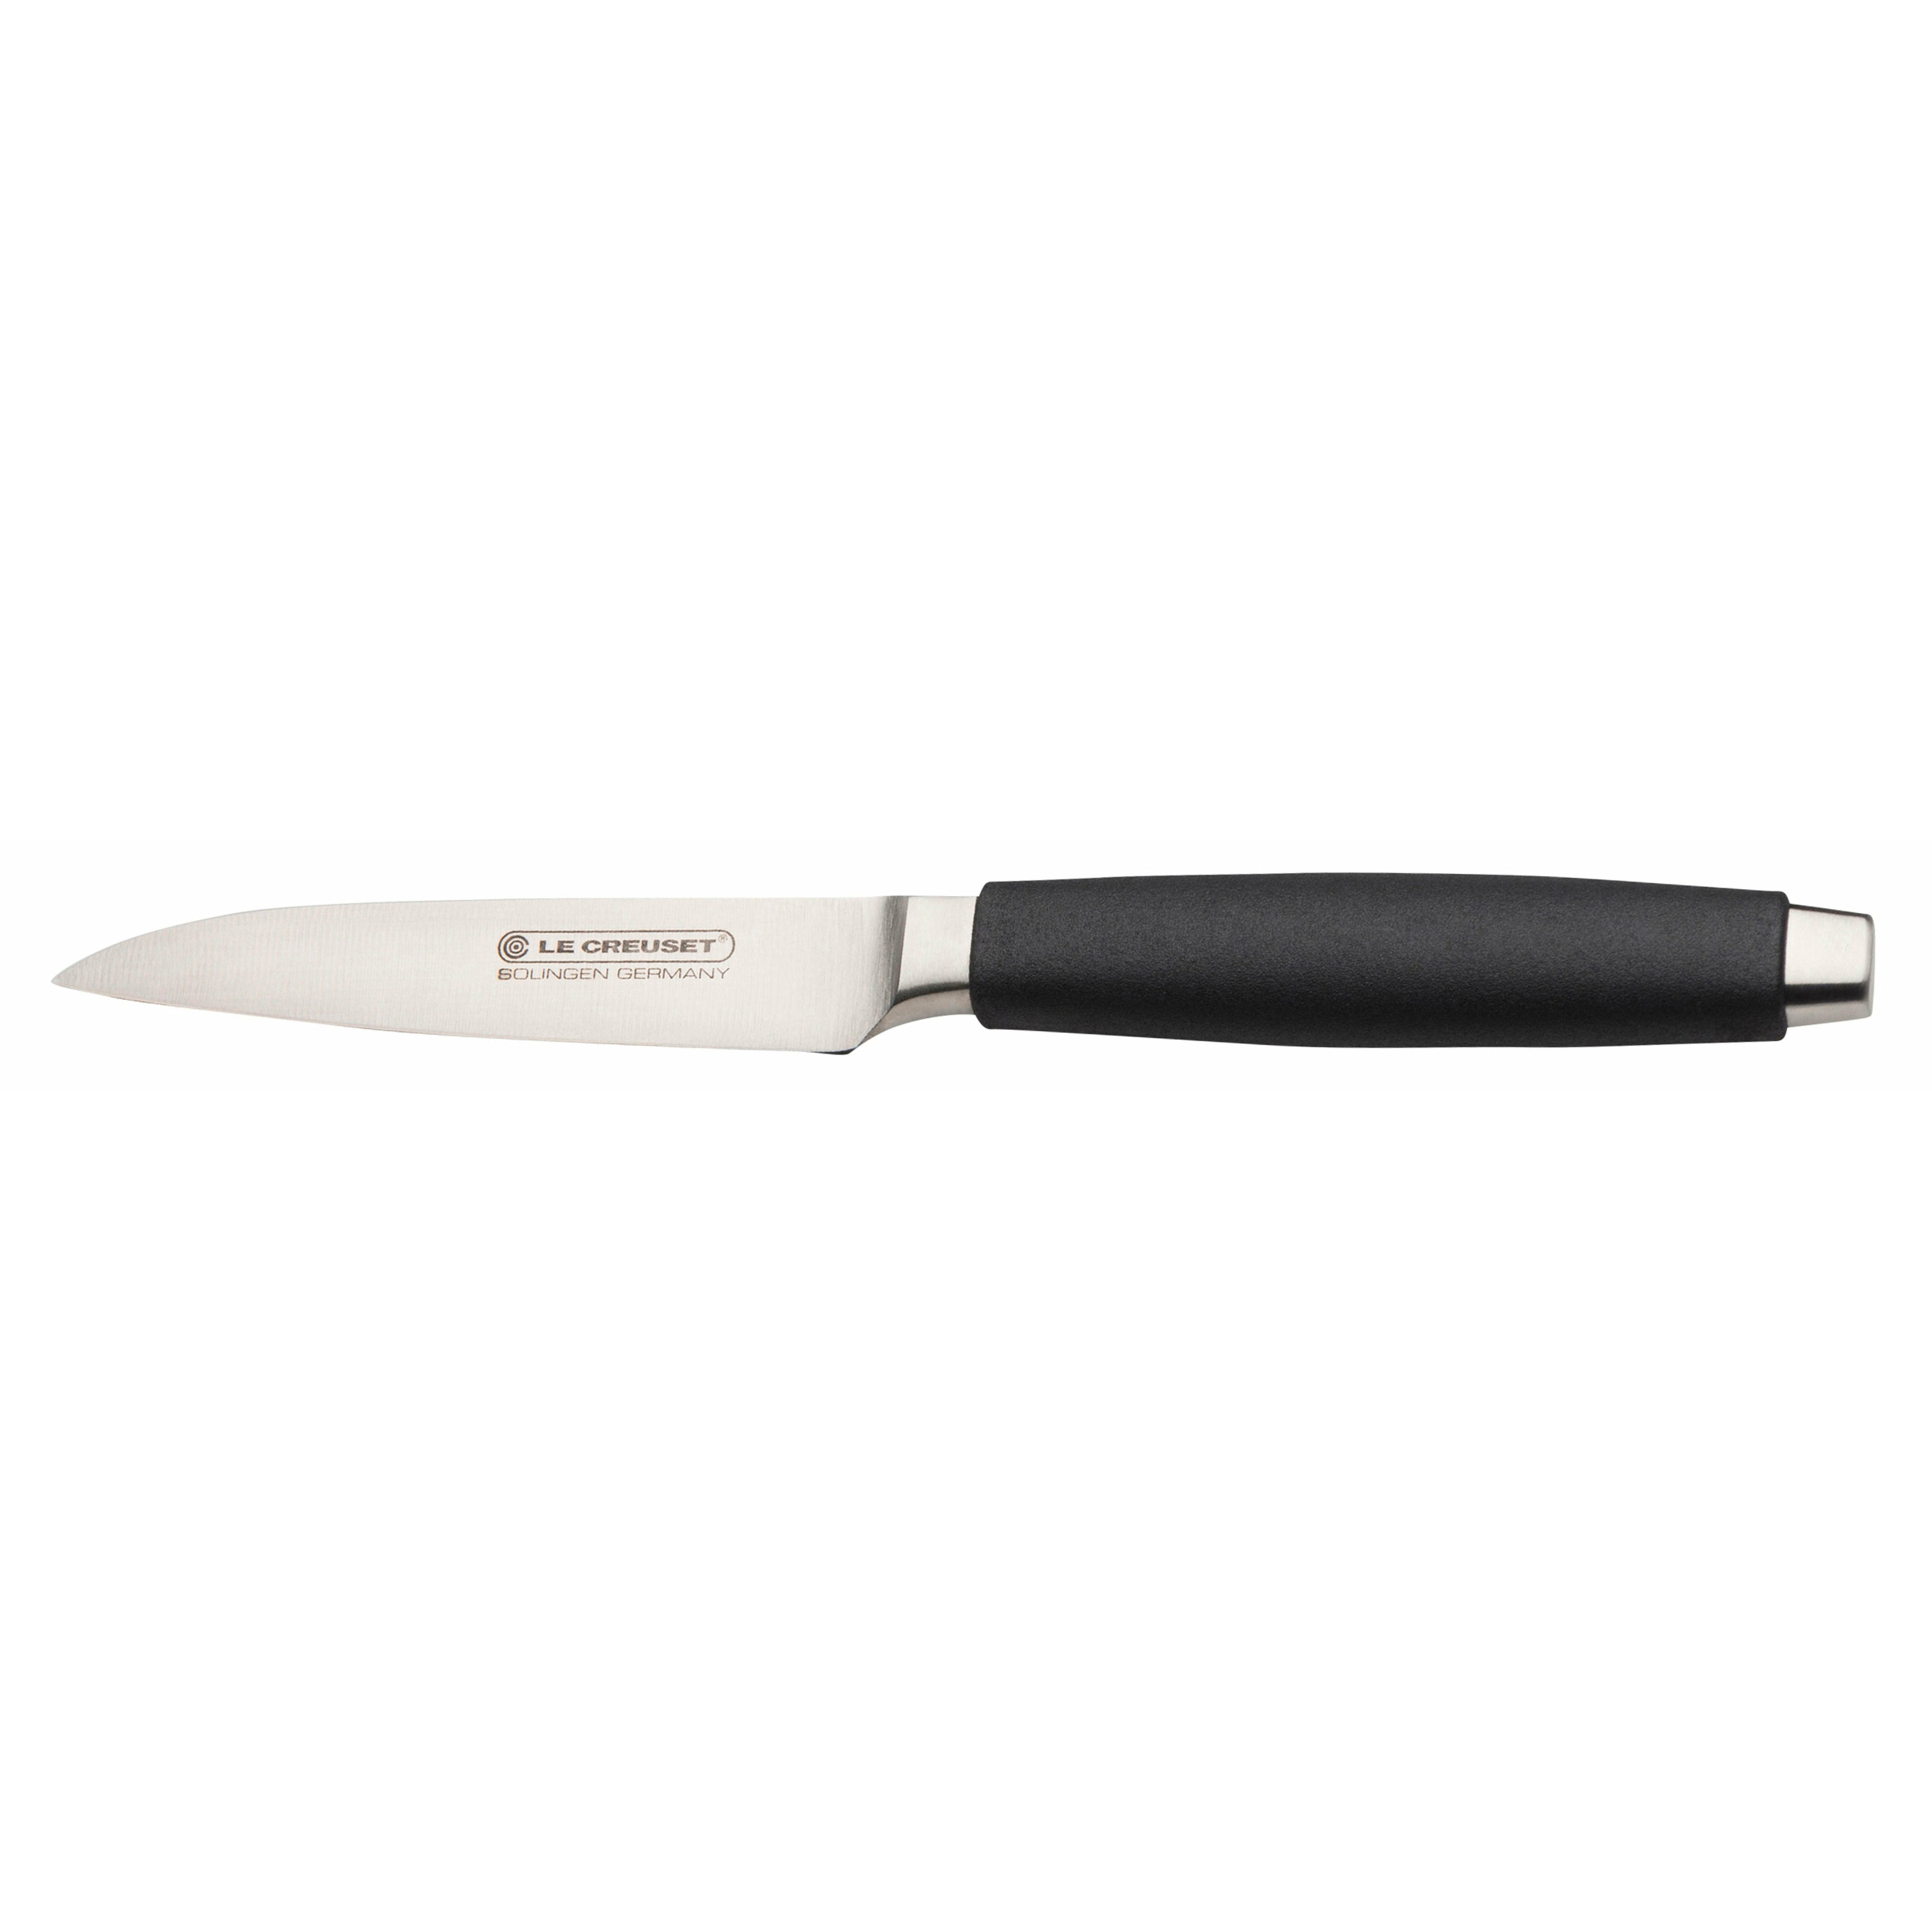 Le Creuset Paring knivstandard med sort håndtag, 9 cm